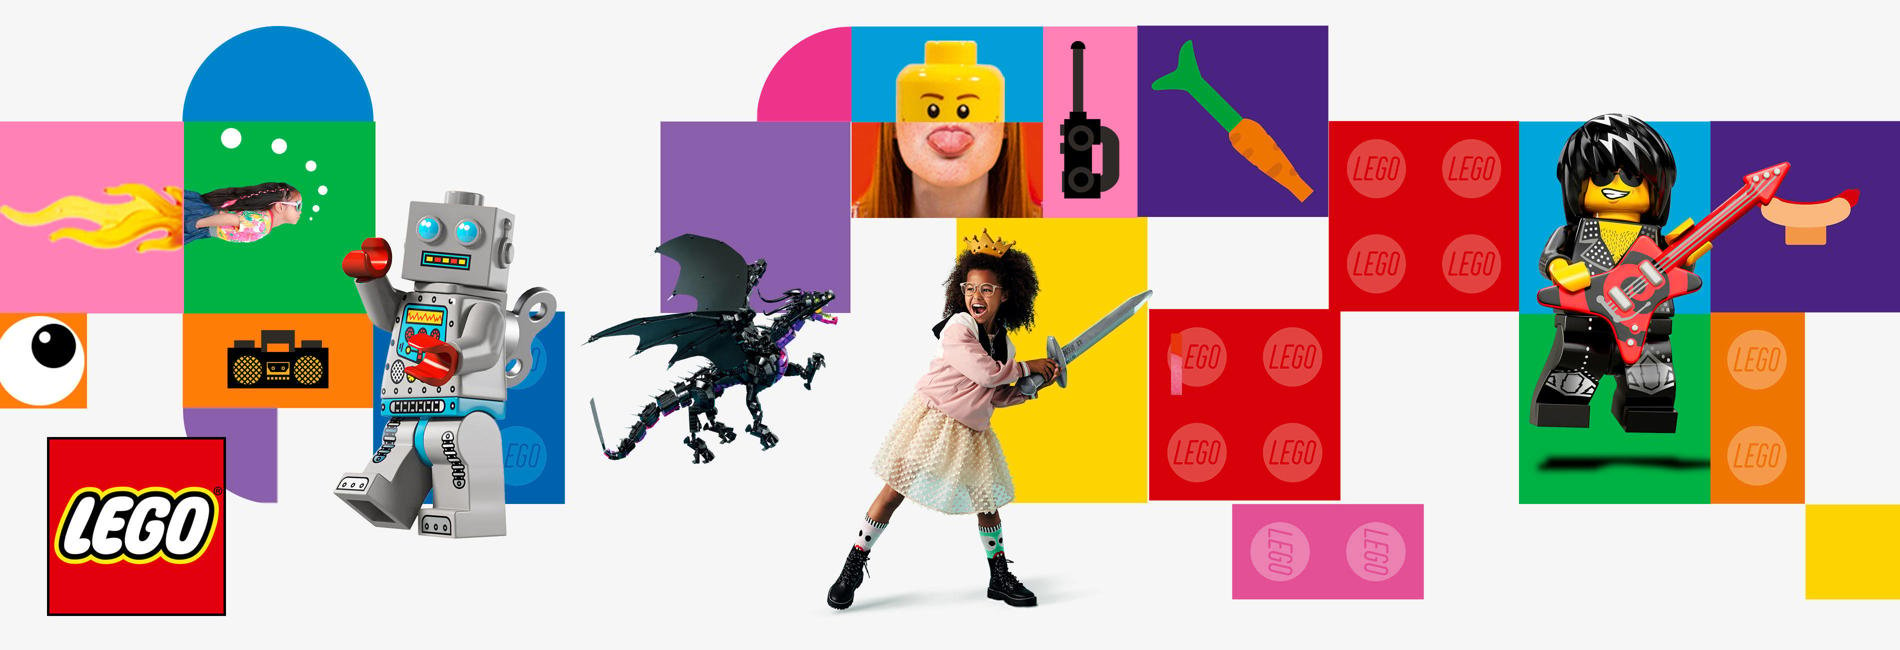 LEGO brandpage teaser MIGRATION